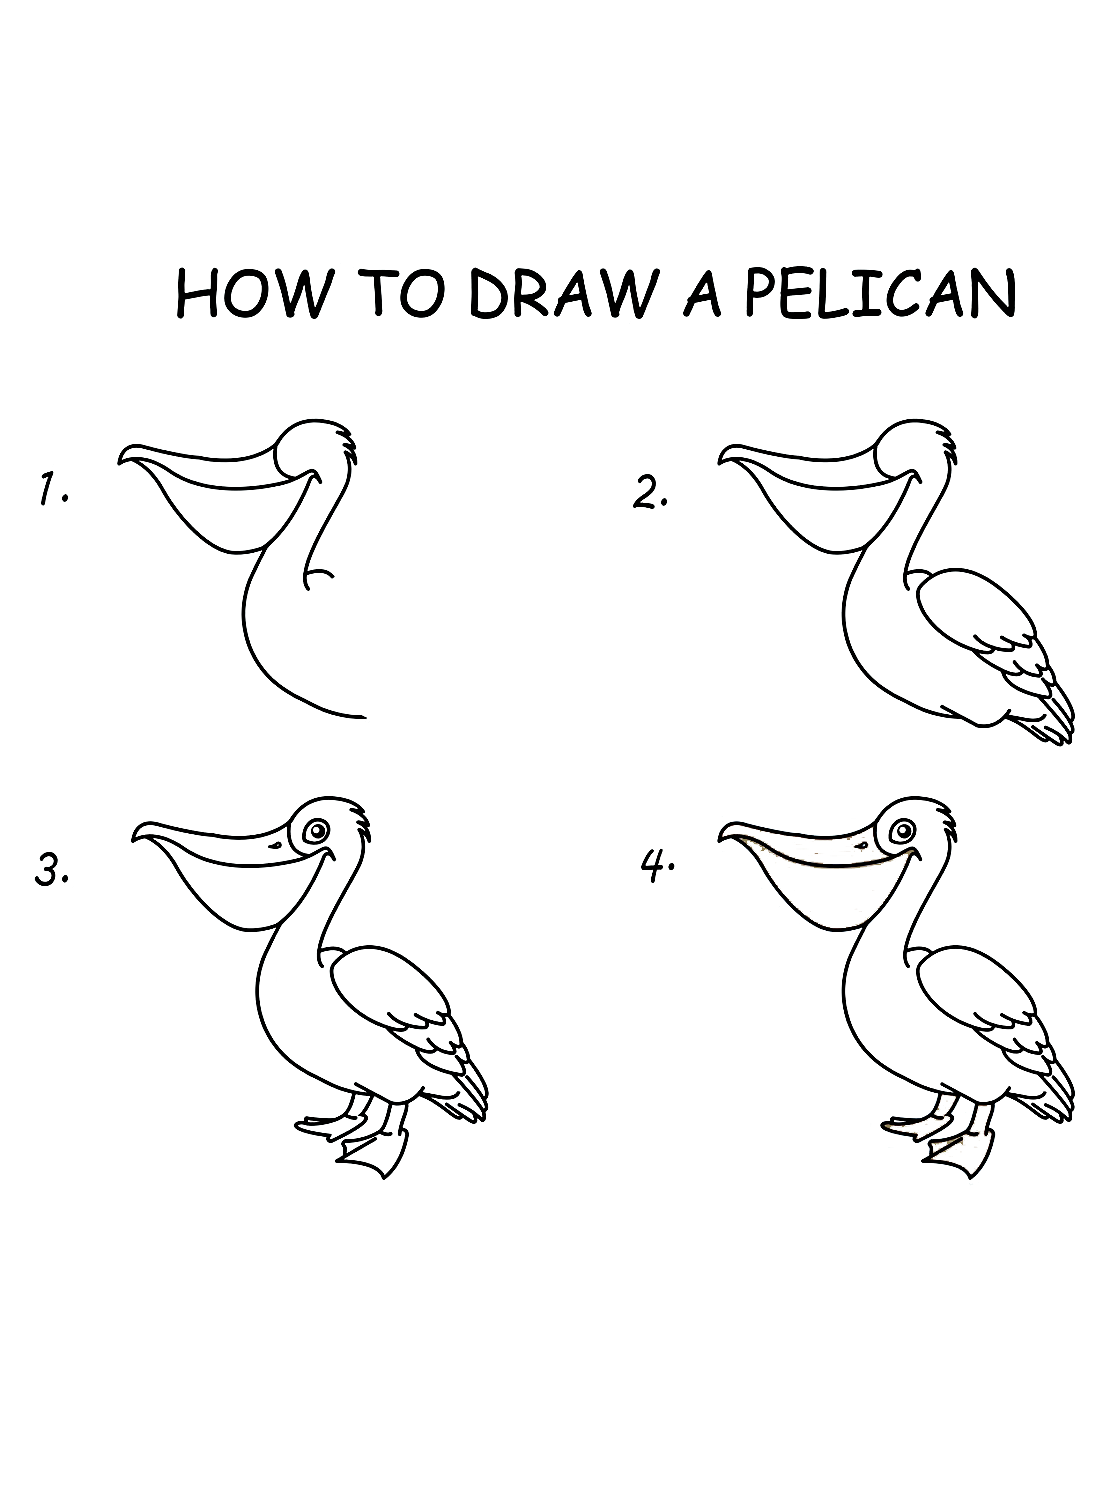 Einen Pelikan aus Pelikan zeichnen